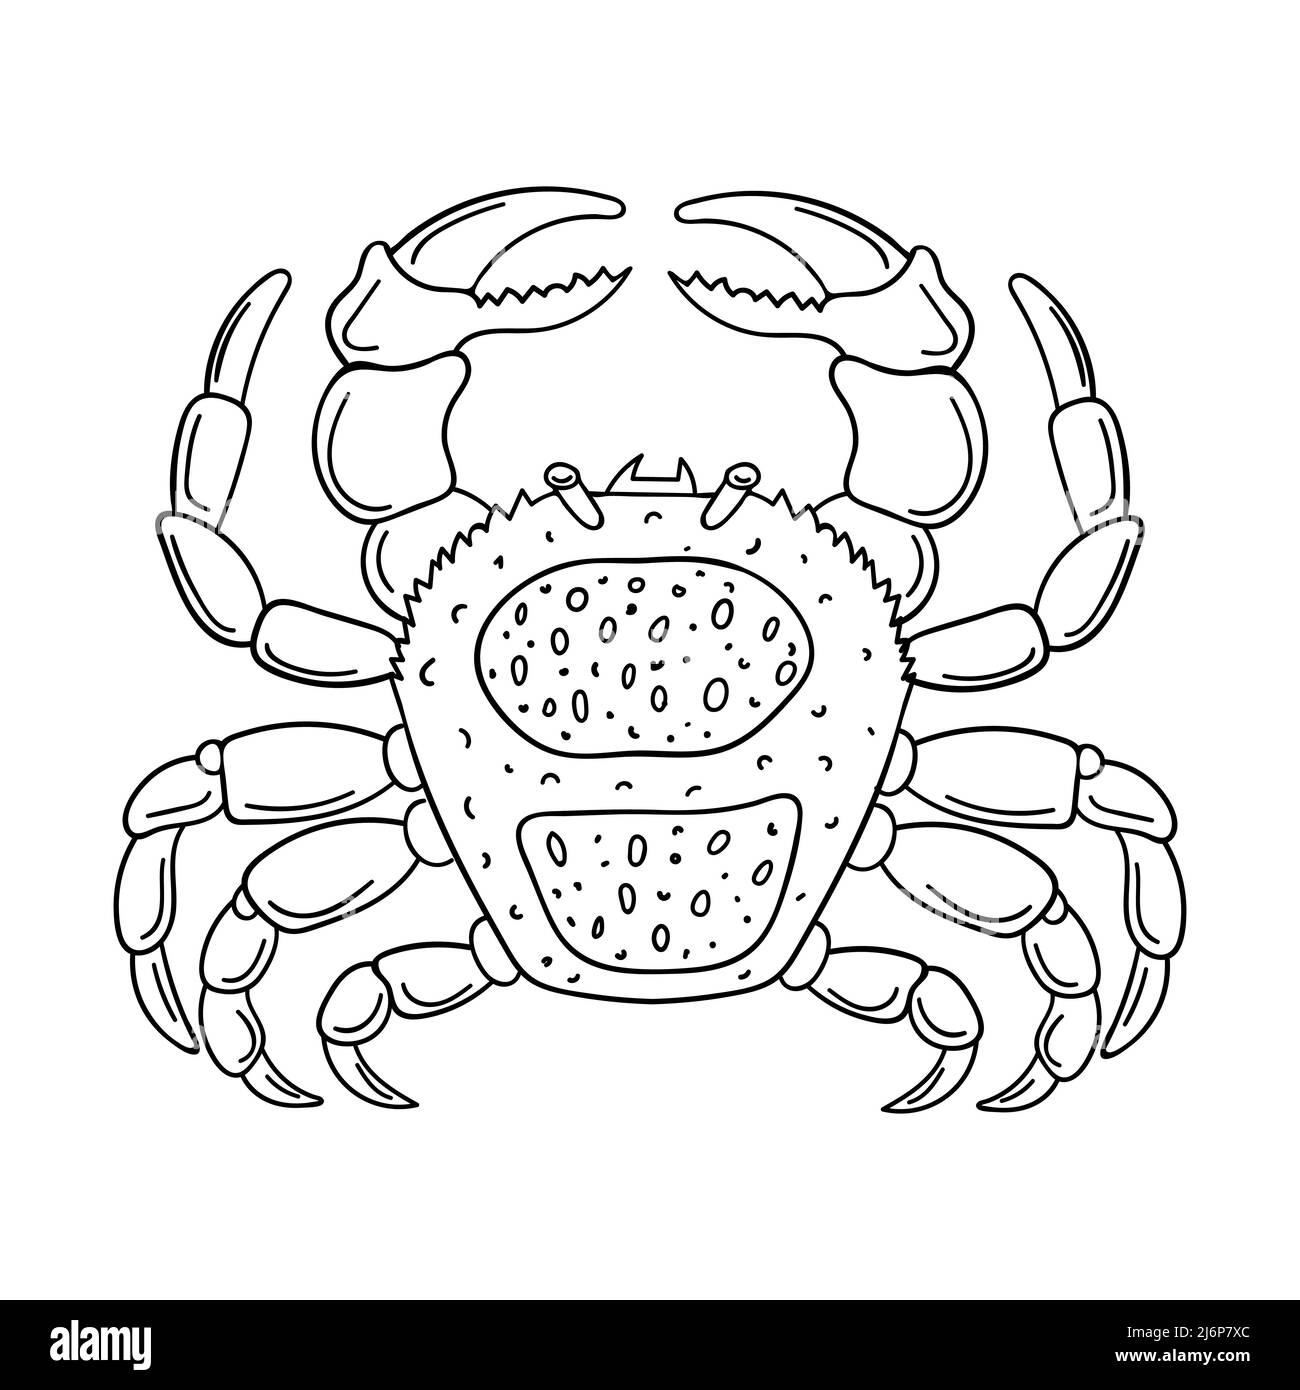 Esquisse d'un crabe. Animal arthropode marin, élément de conception de l'oedle dessiné à la main. Illustration vectorielle simple en noir et blanc. Isolé sur un b blanc Illustration de Vecteur